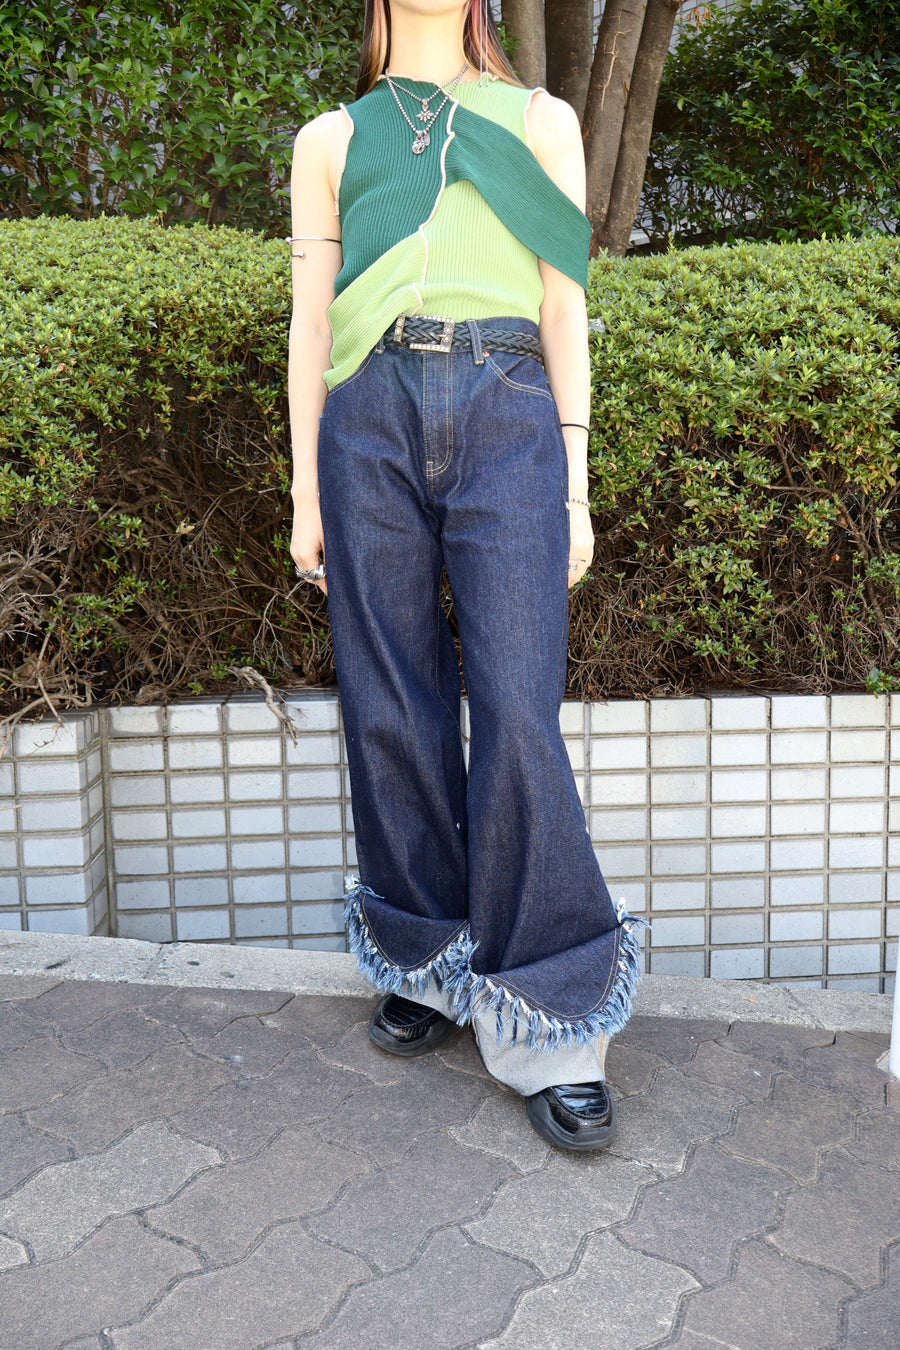 【即納爆買い】コトハヨコザワ ROLLED UP DENIM PANTS パンツ